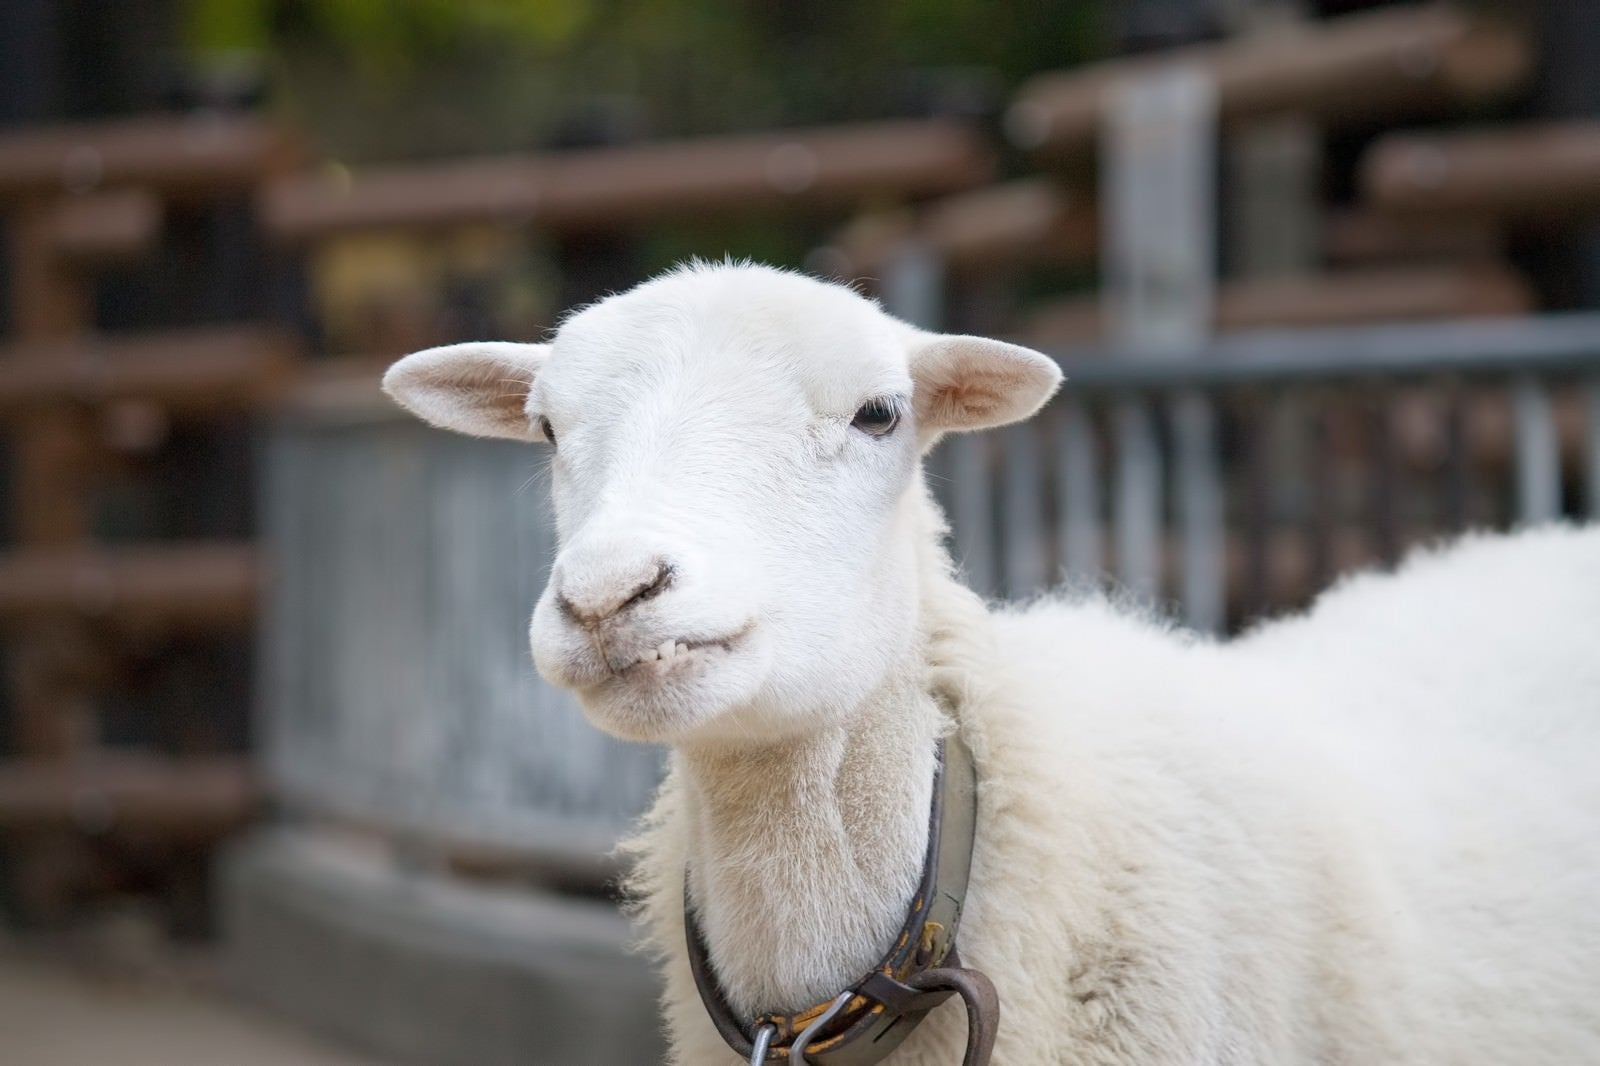 「『っち！』上唇を噛む羊さん」の写真